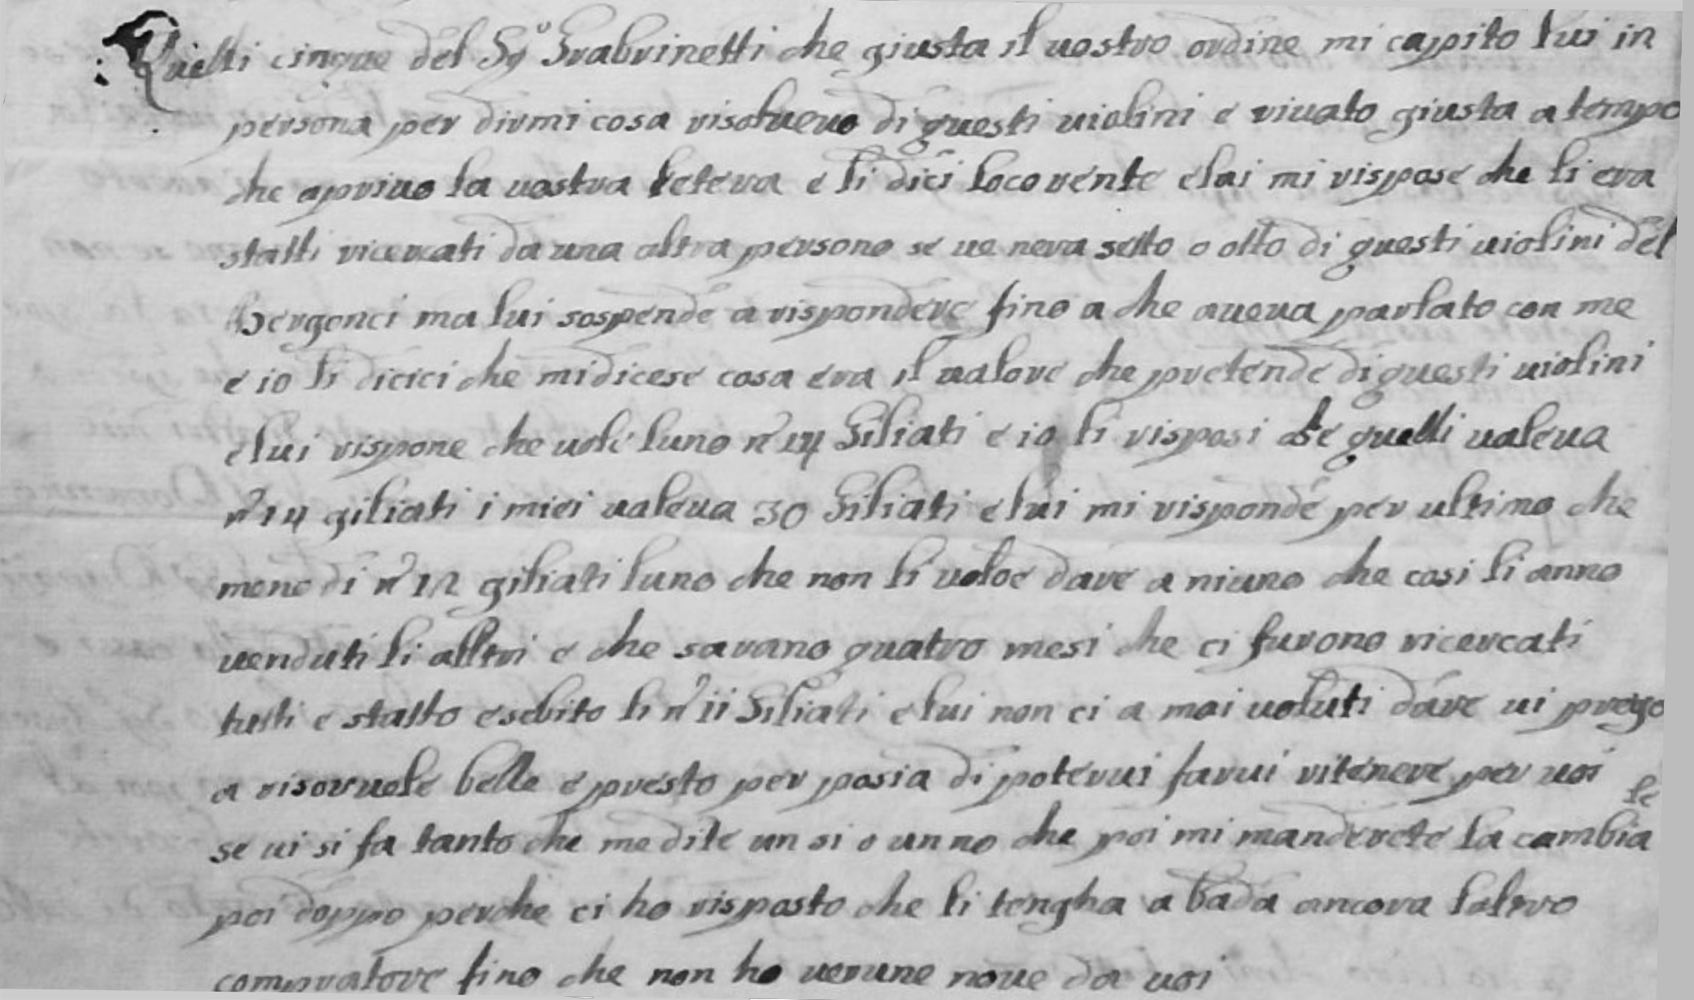 Antonio II Stradivari letter